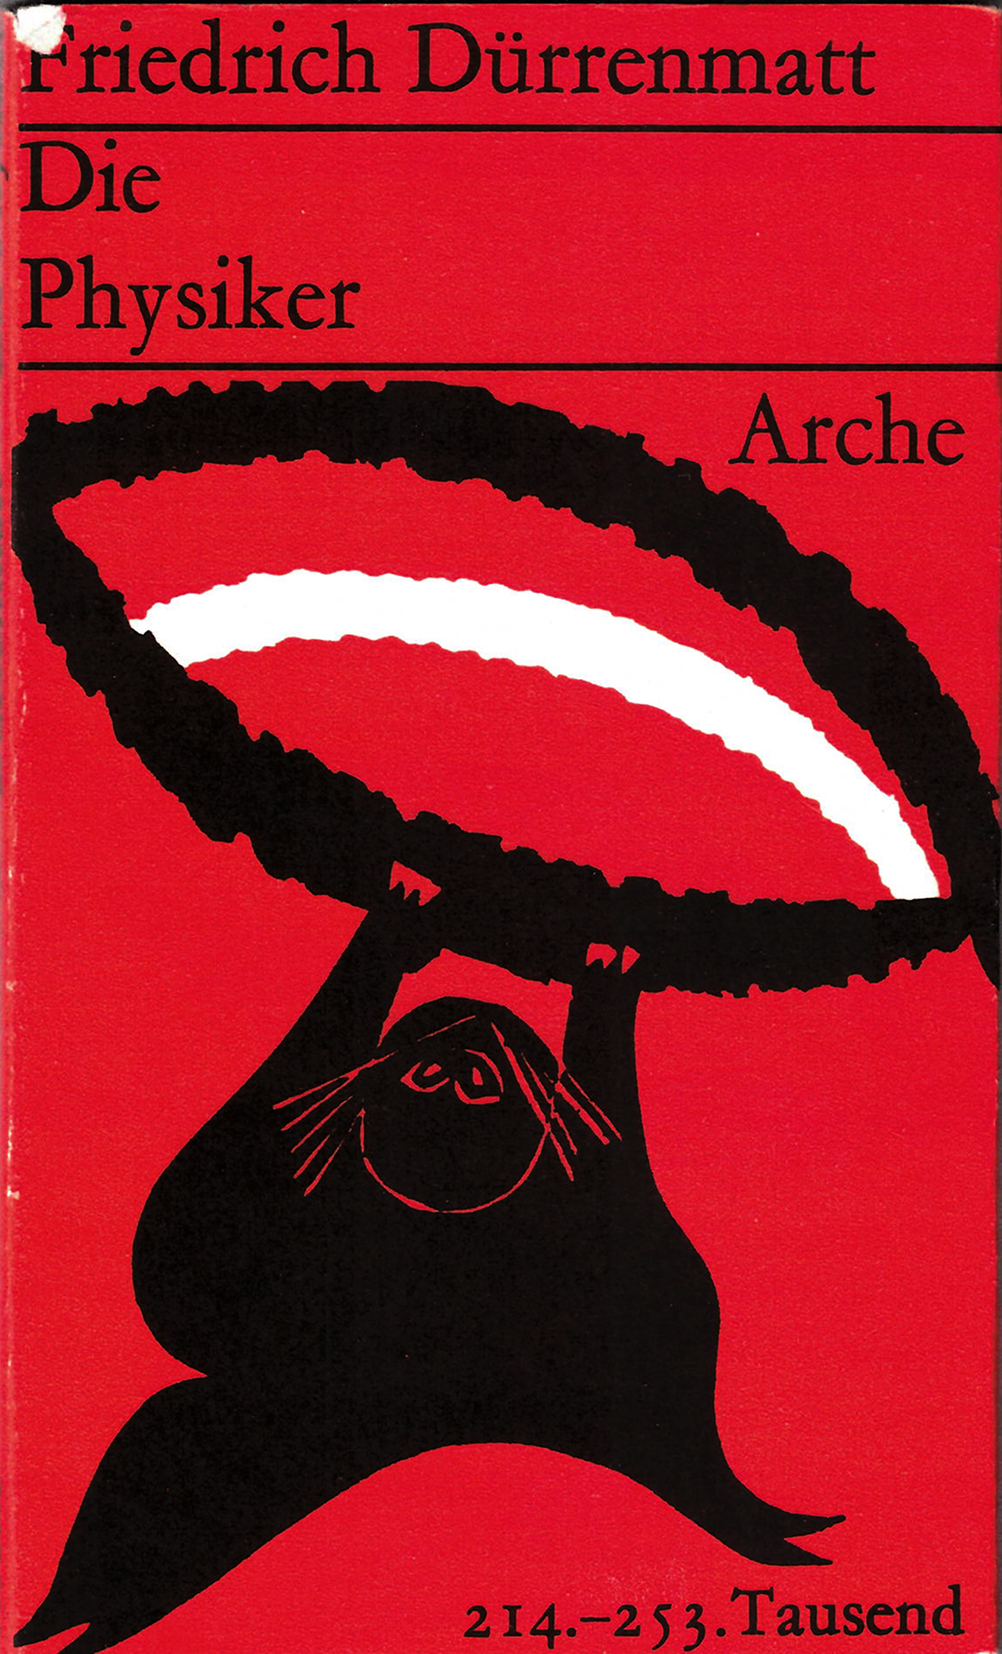 Couverture du livre « Les Physiciens » de Friedrich Dürrenmatt aux éditions Arche avec un dessin de l’auteur, 1962 © Arche Verlag